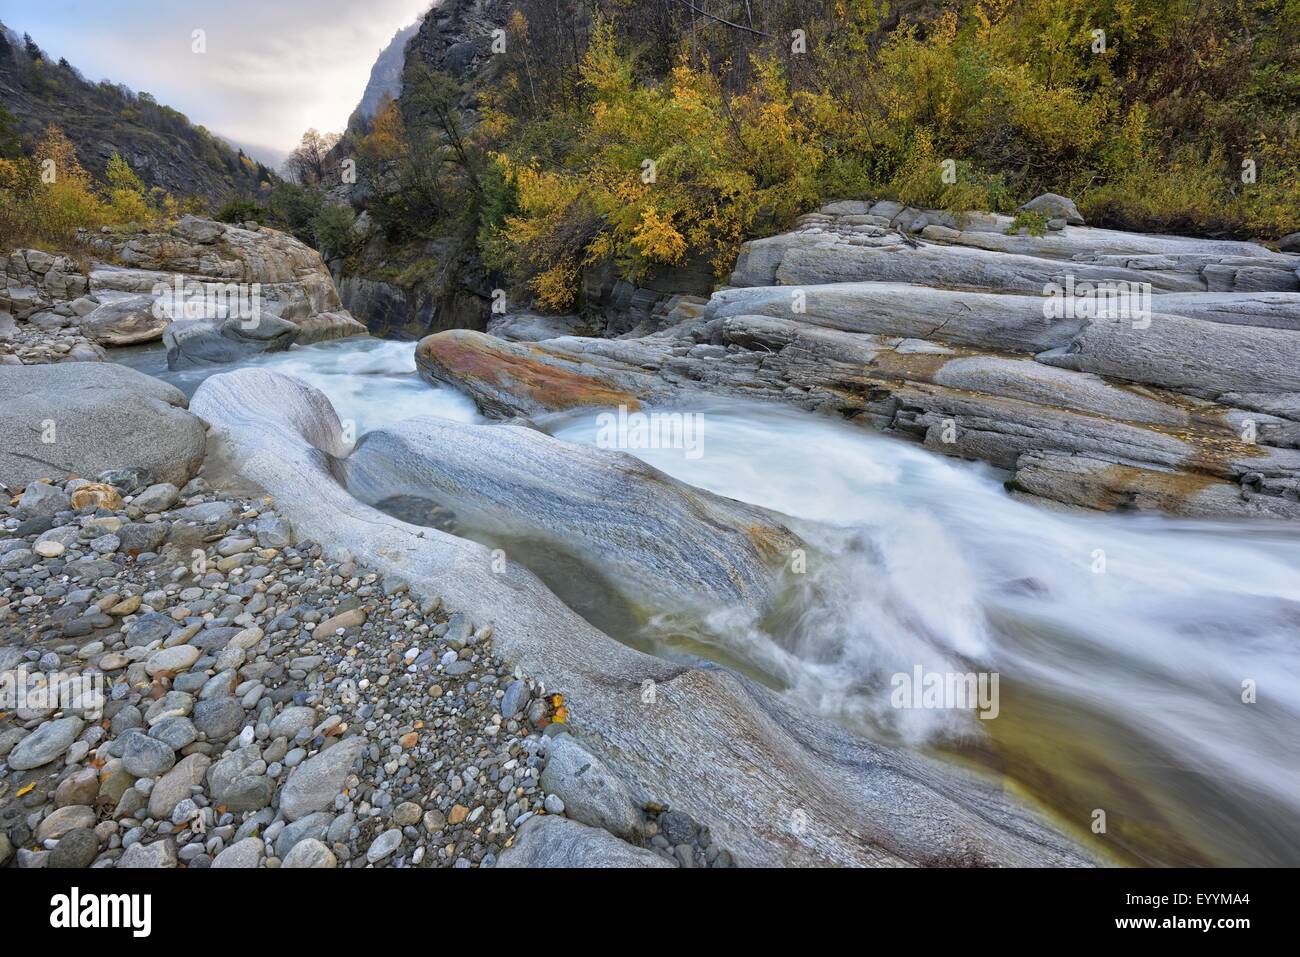 Humeur d'automne lors d'une rivière de montagne dans le Parc National du Grand Paradis, en Italie, Gran Paradiso National Park Banque D'Images